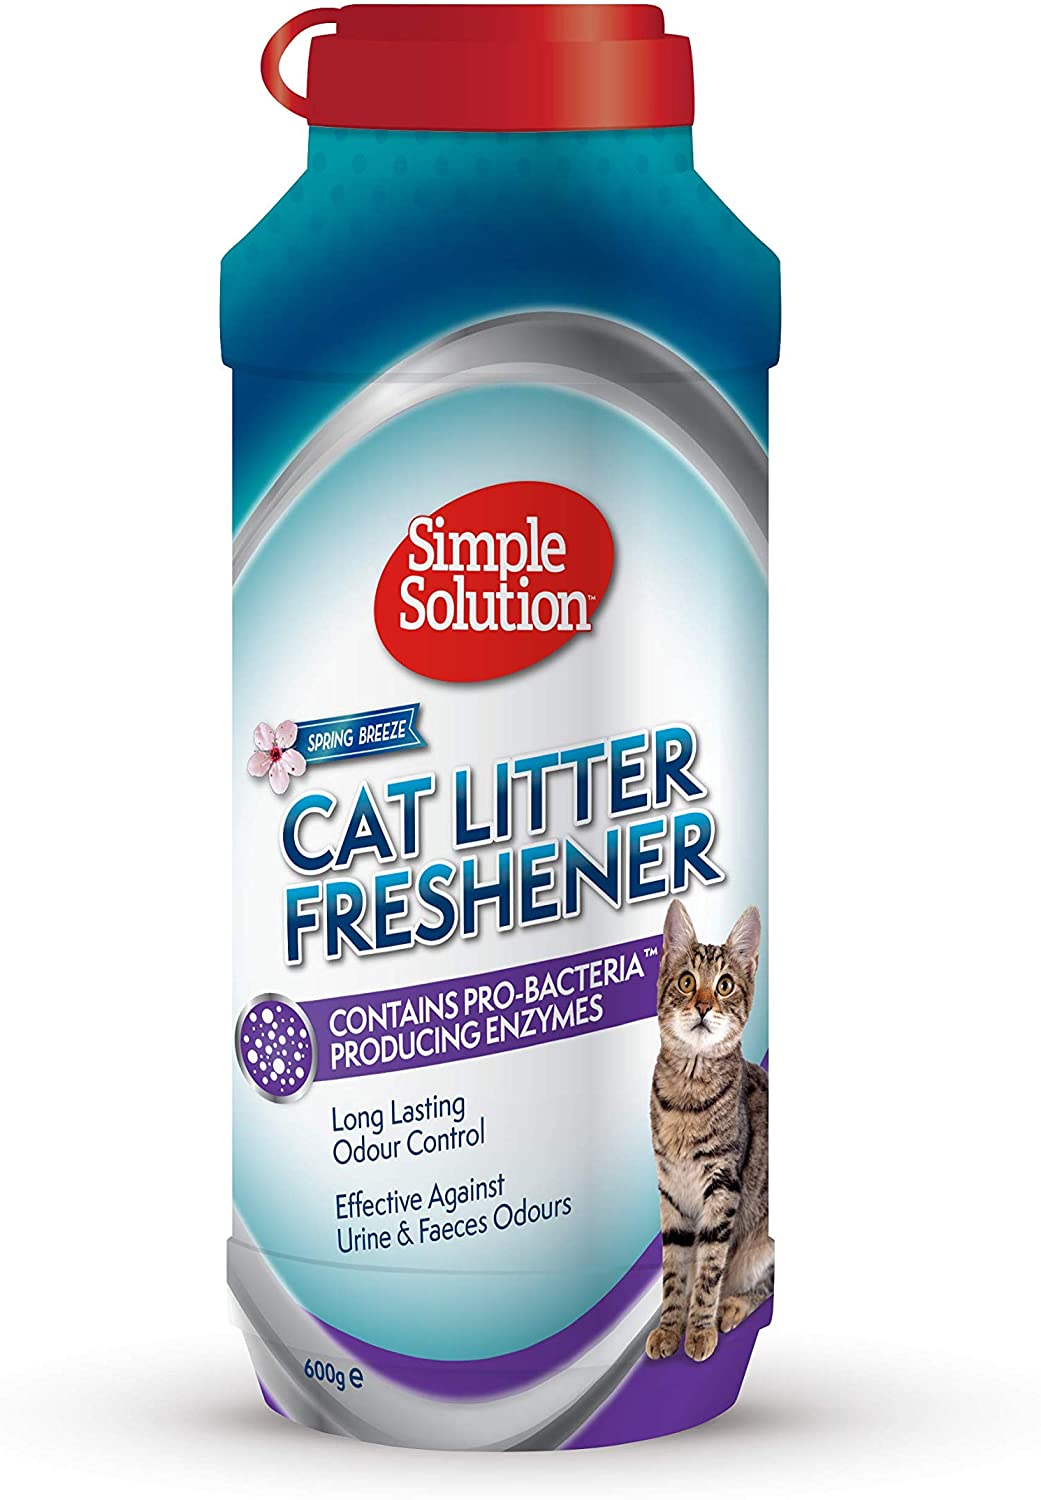 אבקה נטרול ריח לארגז חול סימפל סולושן Simple Solution Cat Litter Freshener